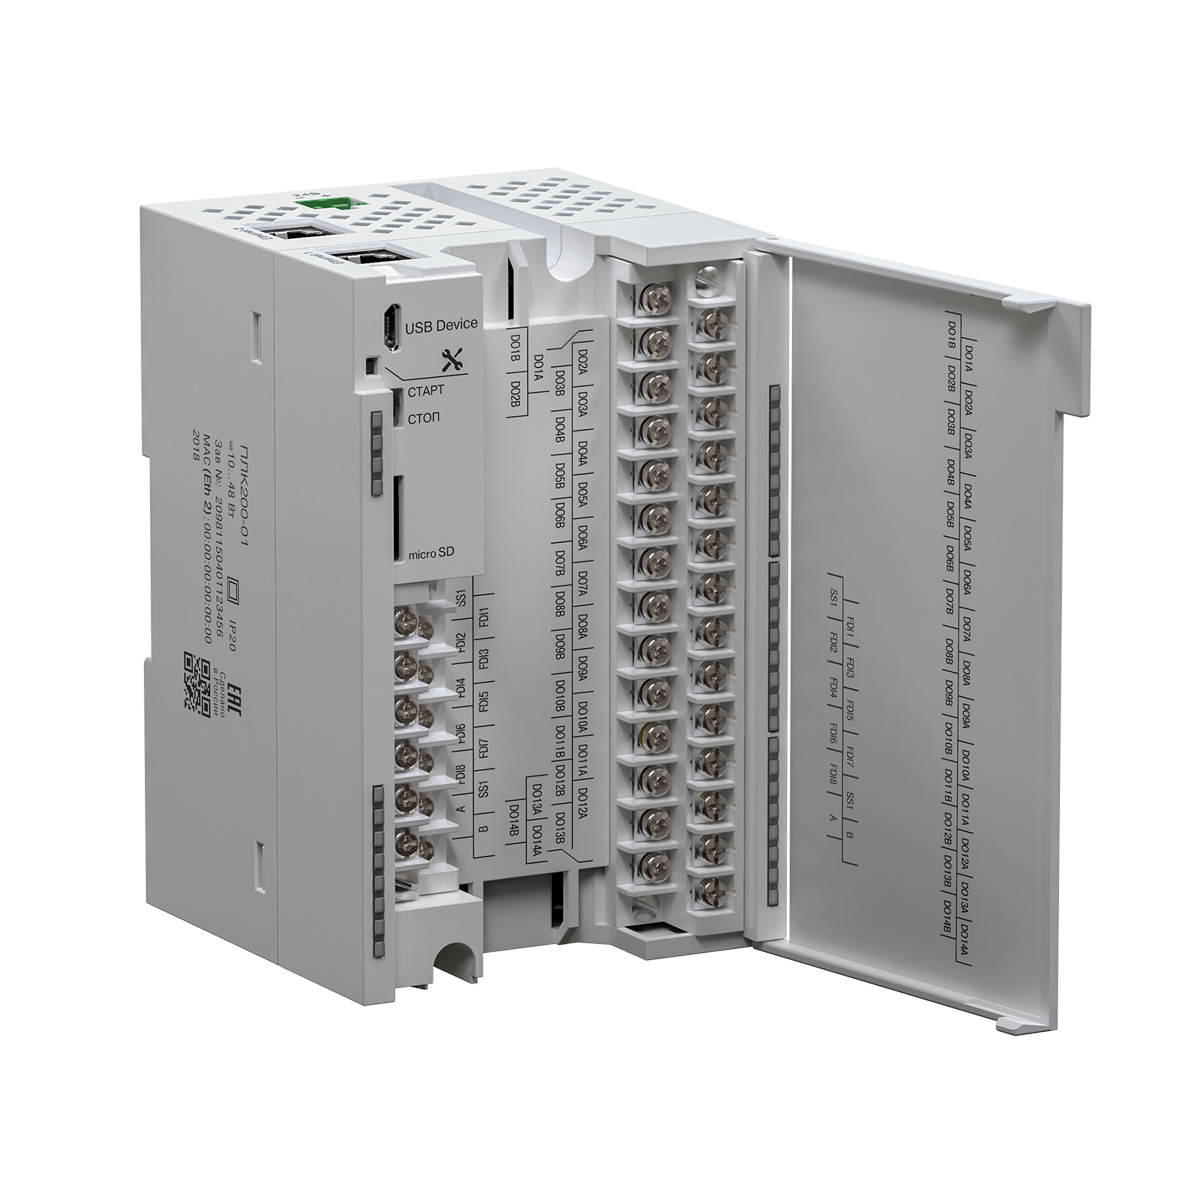 ПЛК200 контроллер для малых и средних систем автоматизации